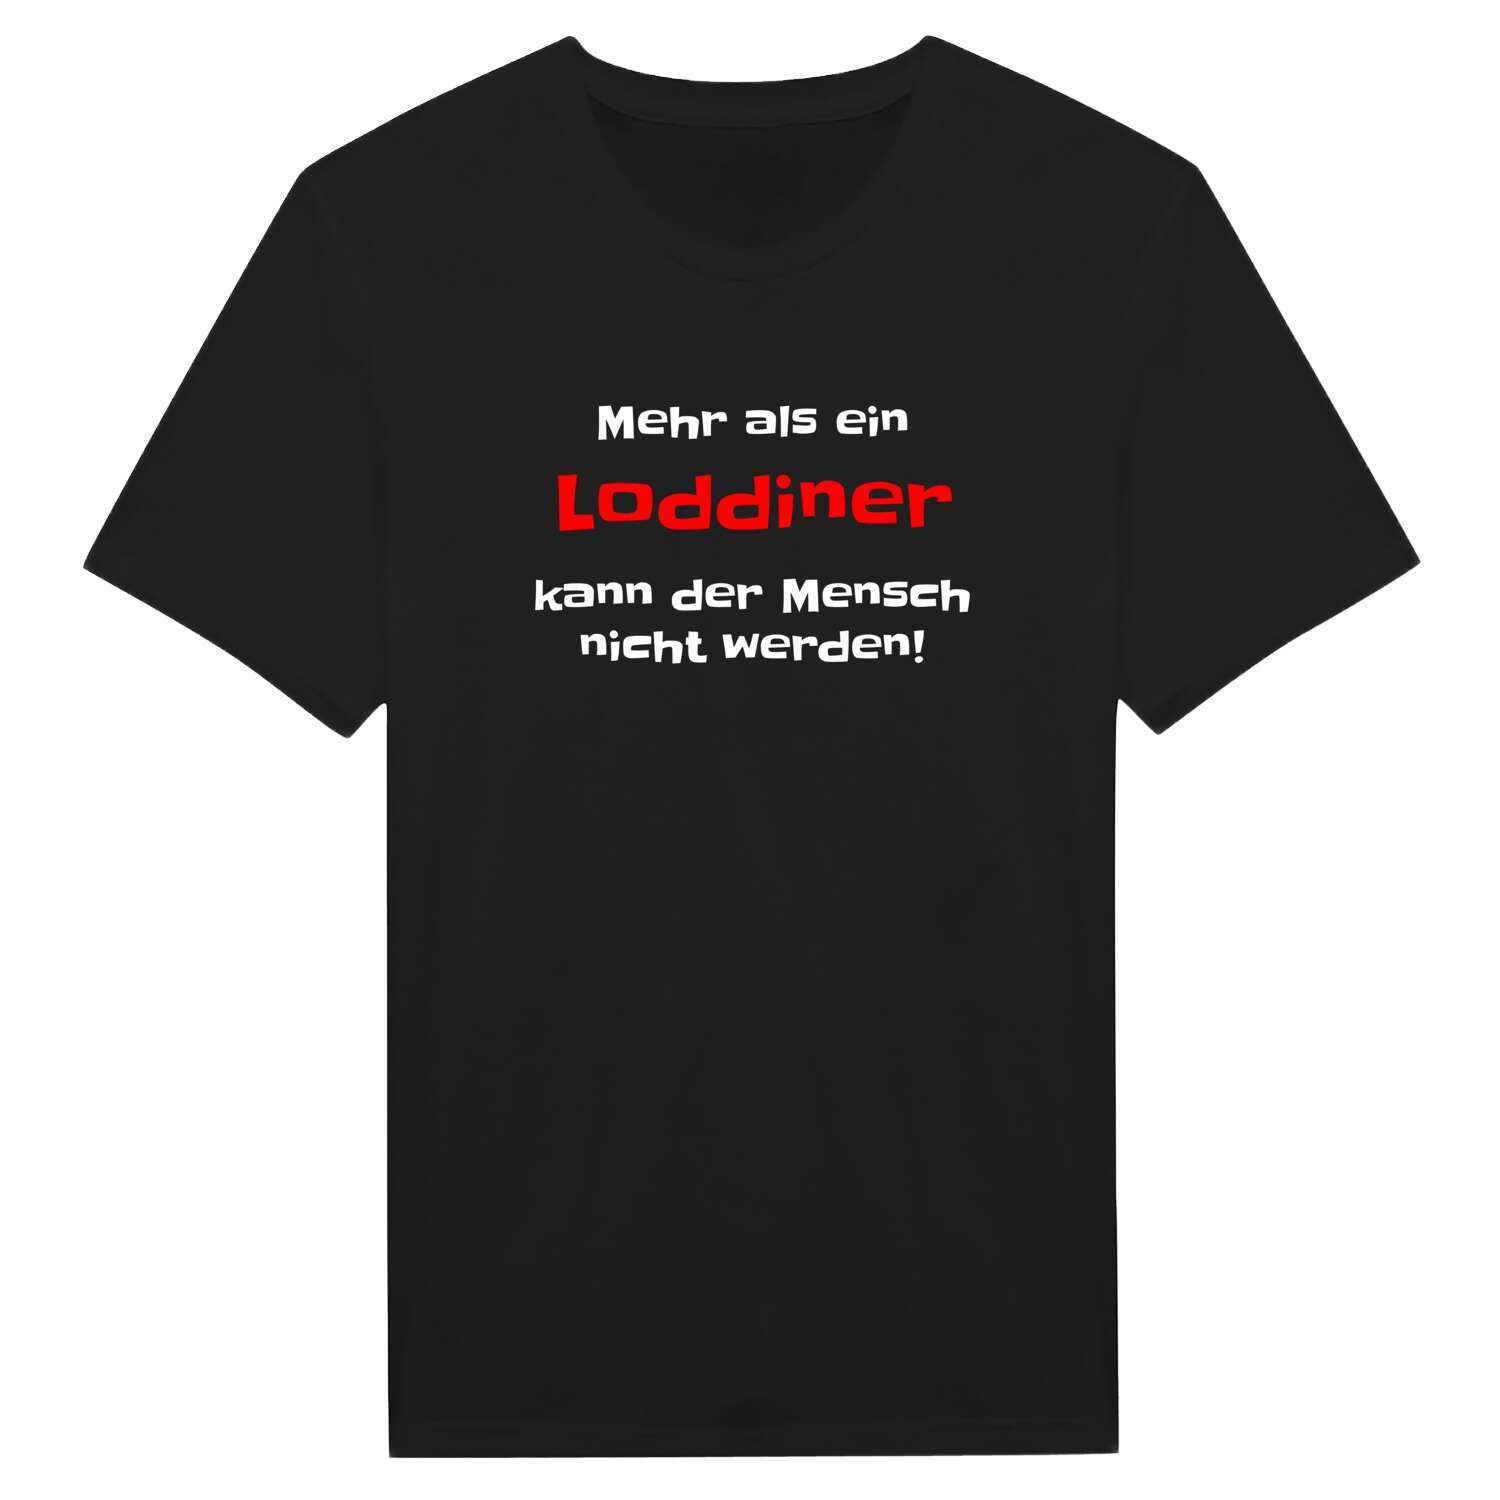 Loddin T-Shirt »Mehr als ein«